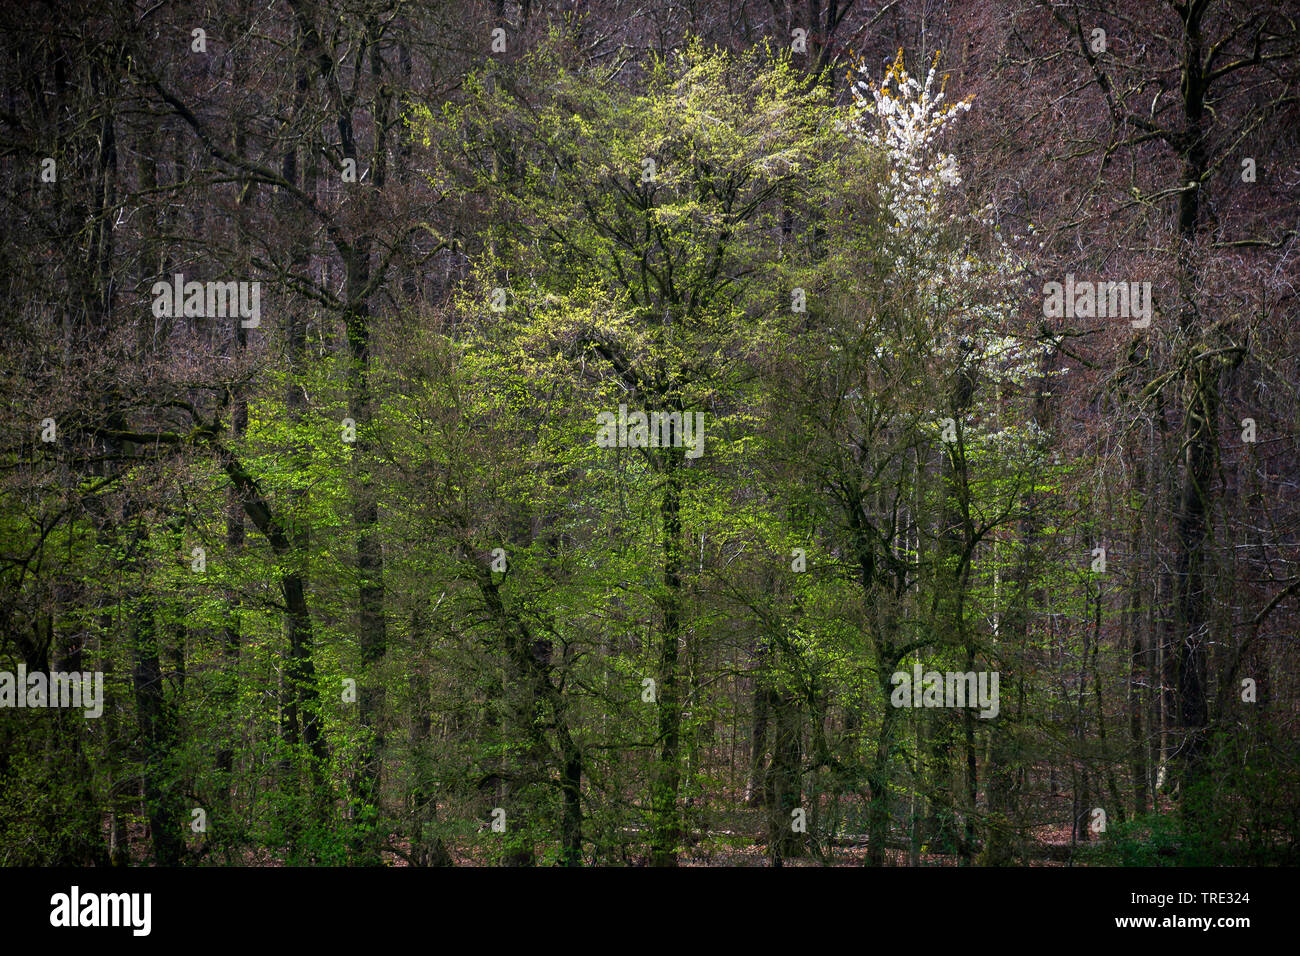 Cherry Tree, le cerisier (Prunus avium), de la forêt mixte au printemps de fleurs de cerisiers, Allemagne, Rhénanie du Nord-Westphalie Banque D'Images